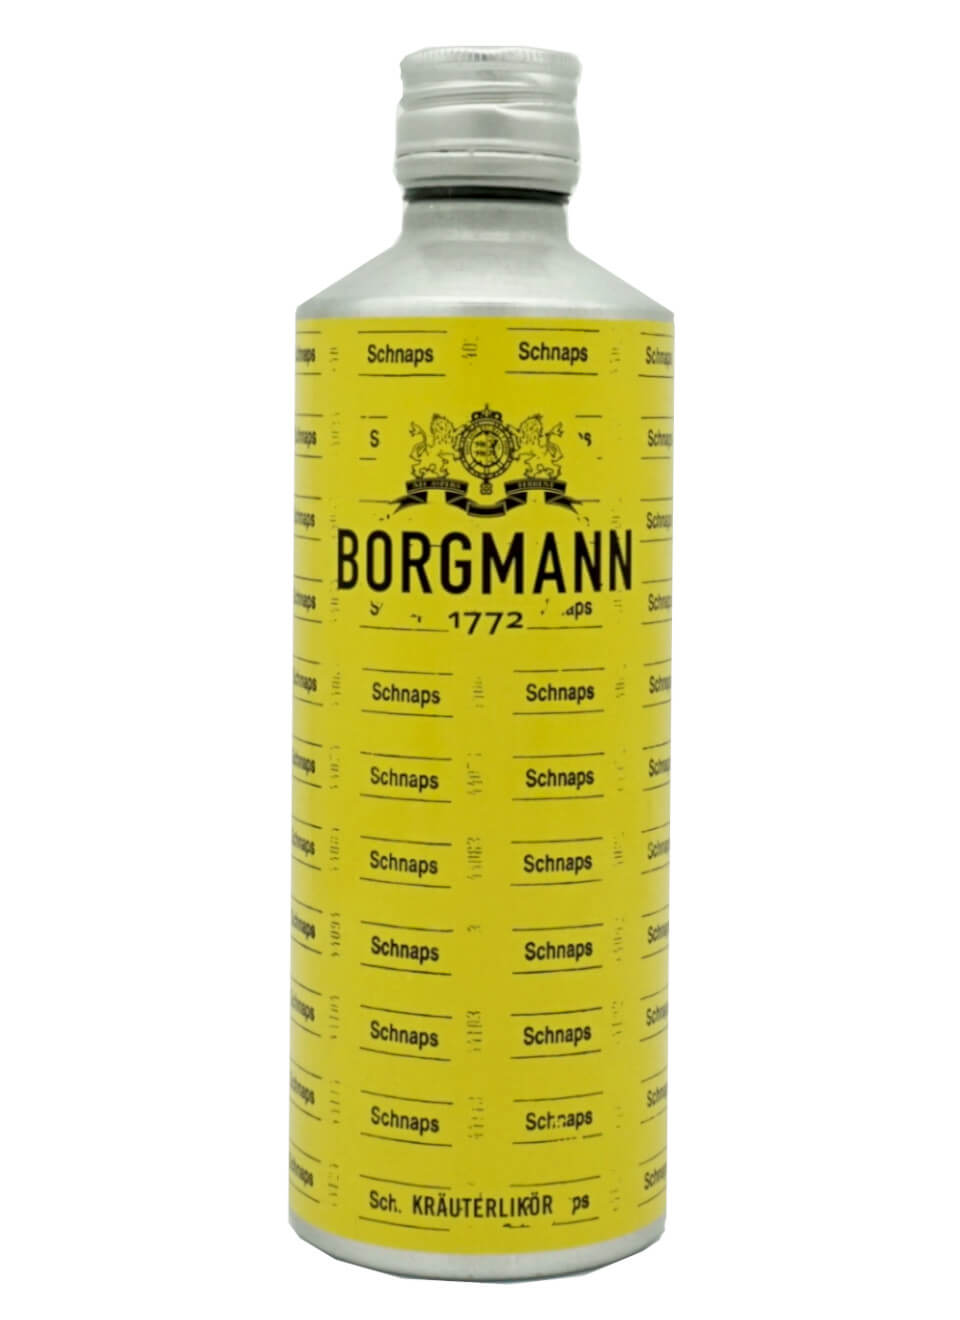 Borgmann Kräuterlikör 1772 Shop günstig Online für | L - 0,5 kaufen Barzubehör Spirituosen Spirituosenworld.de und